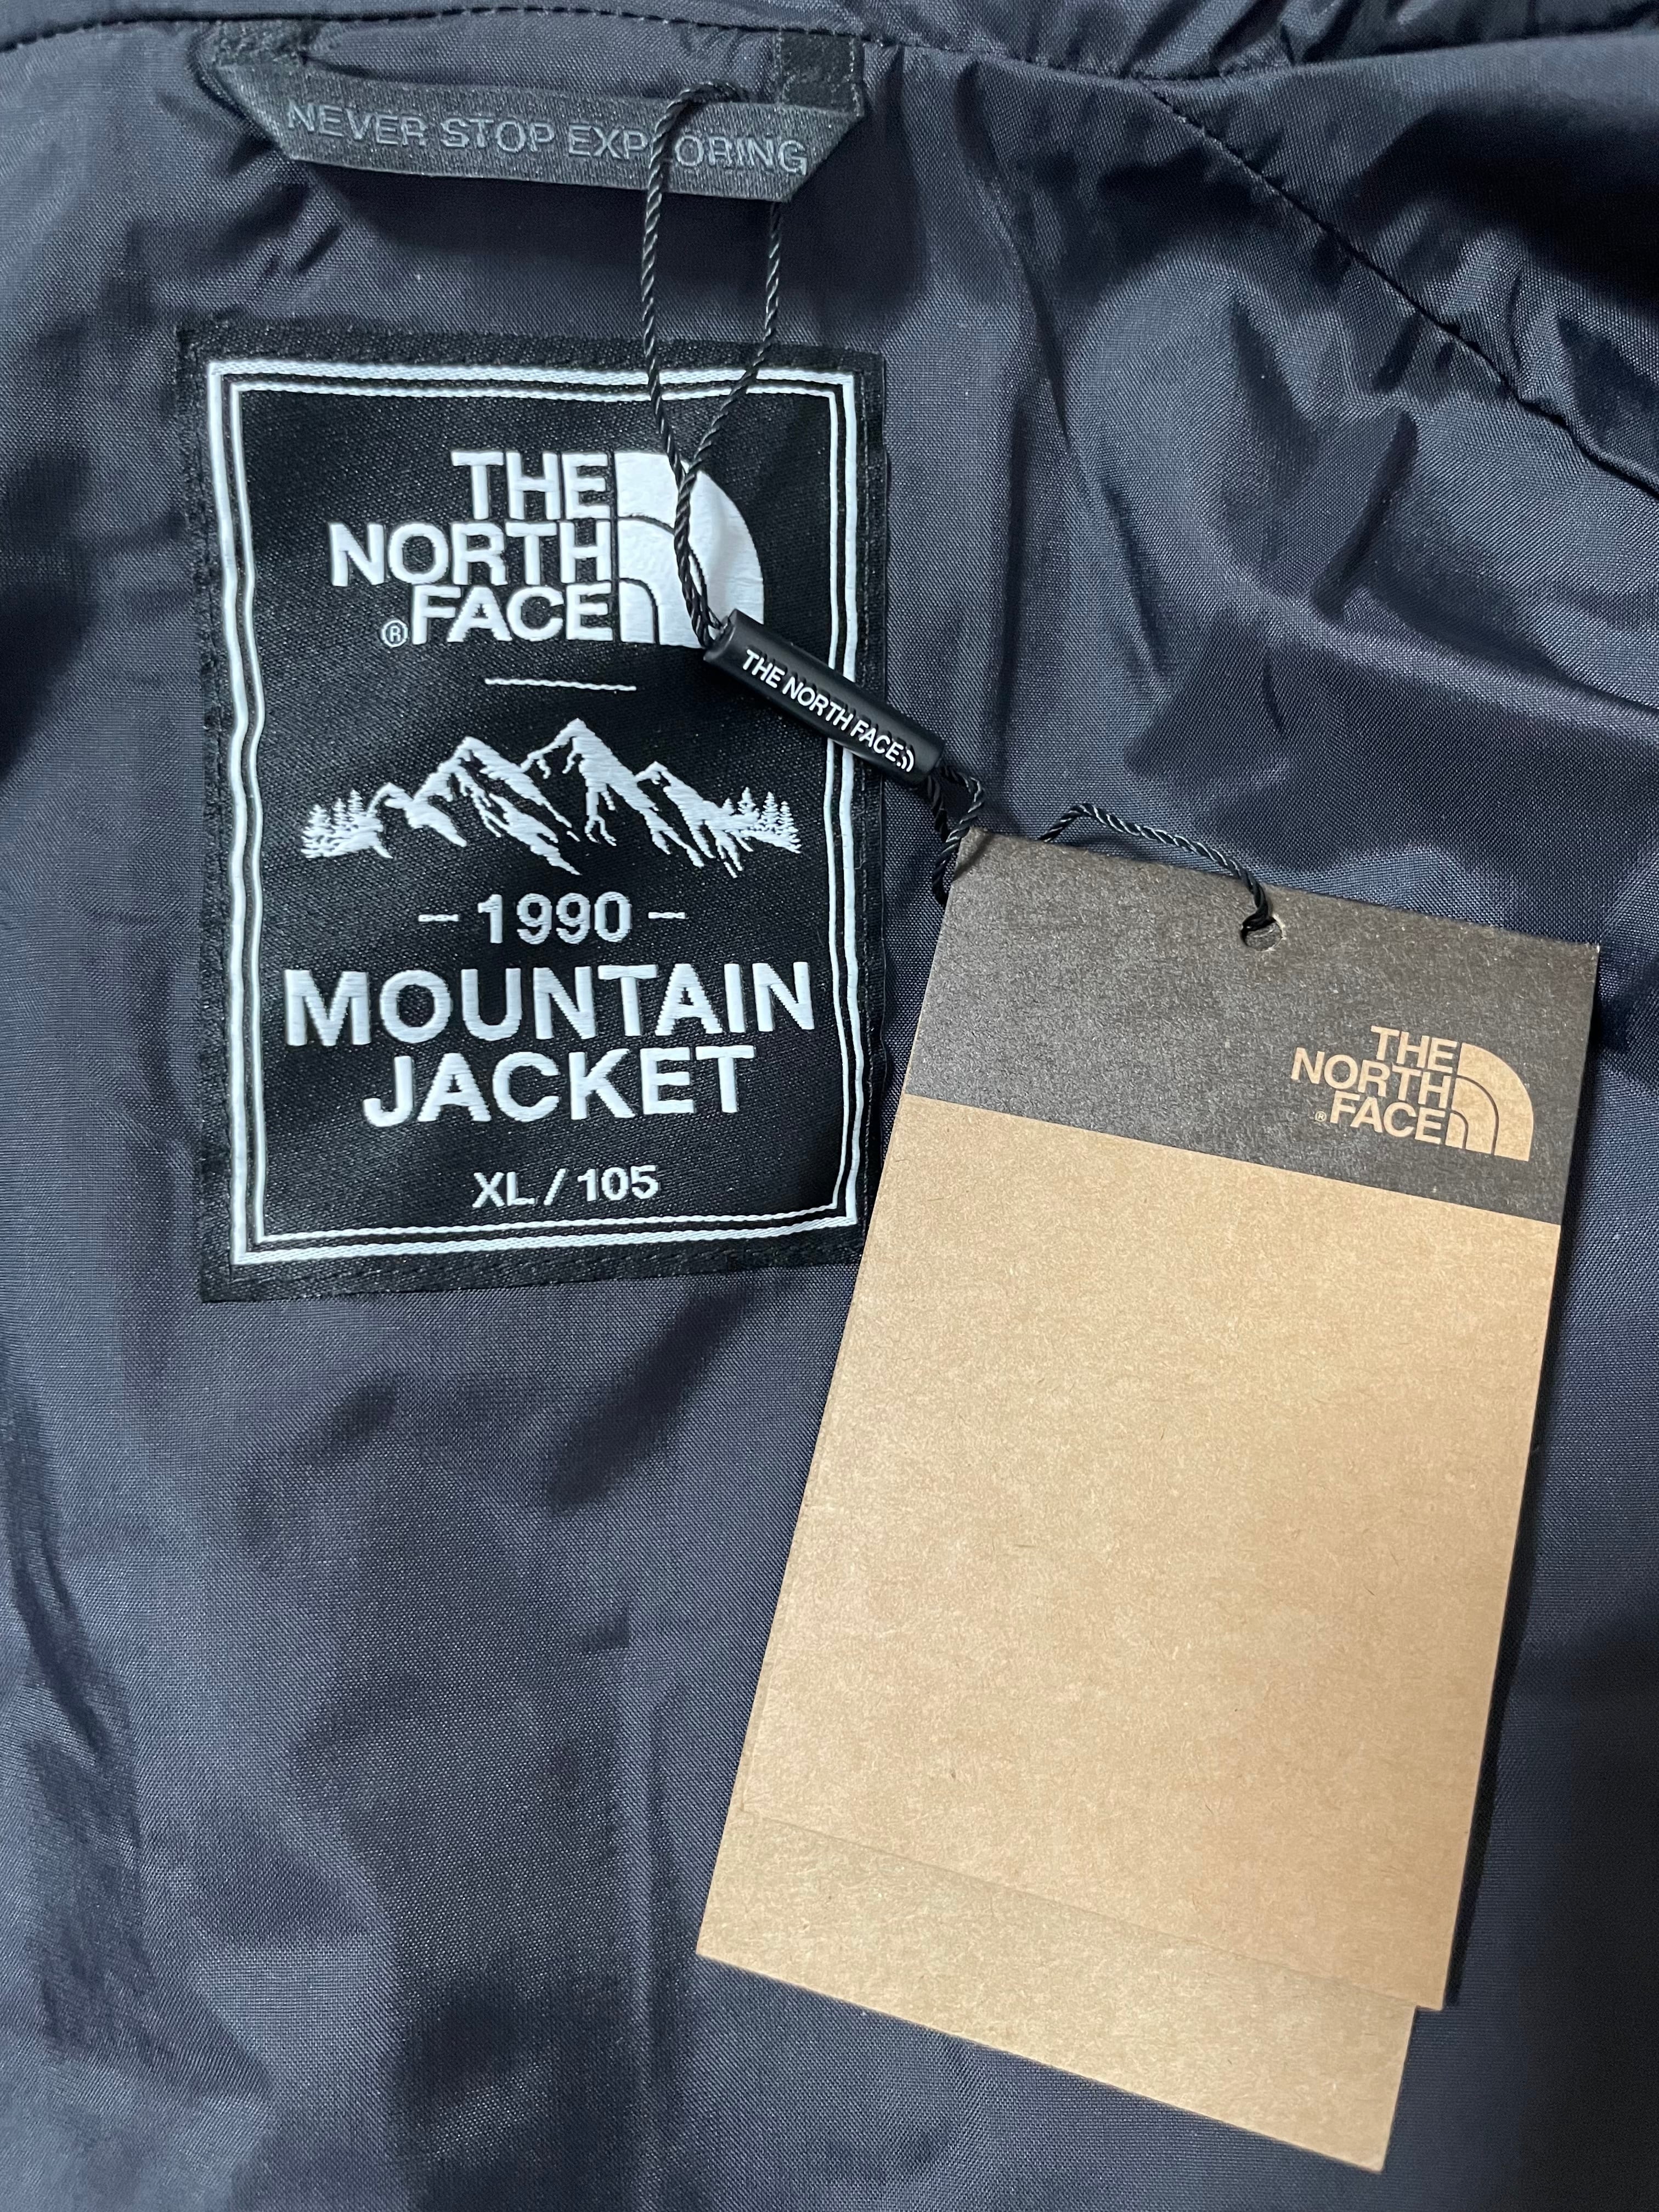 1990 mountain jacket xxl